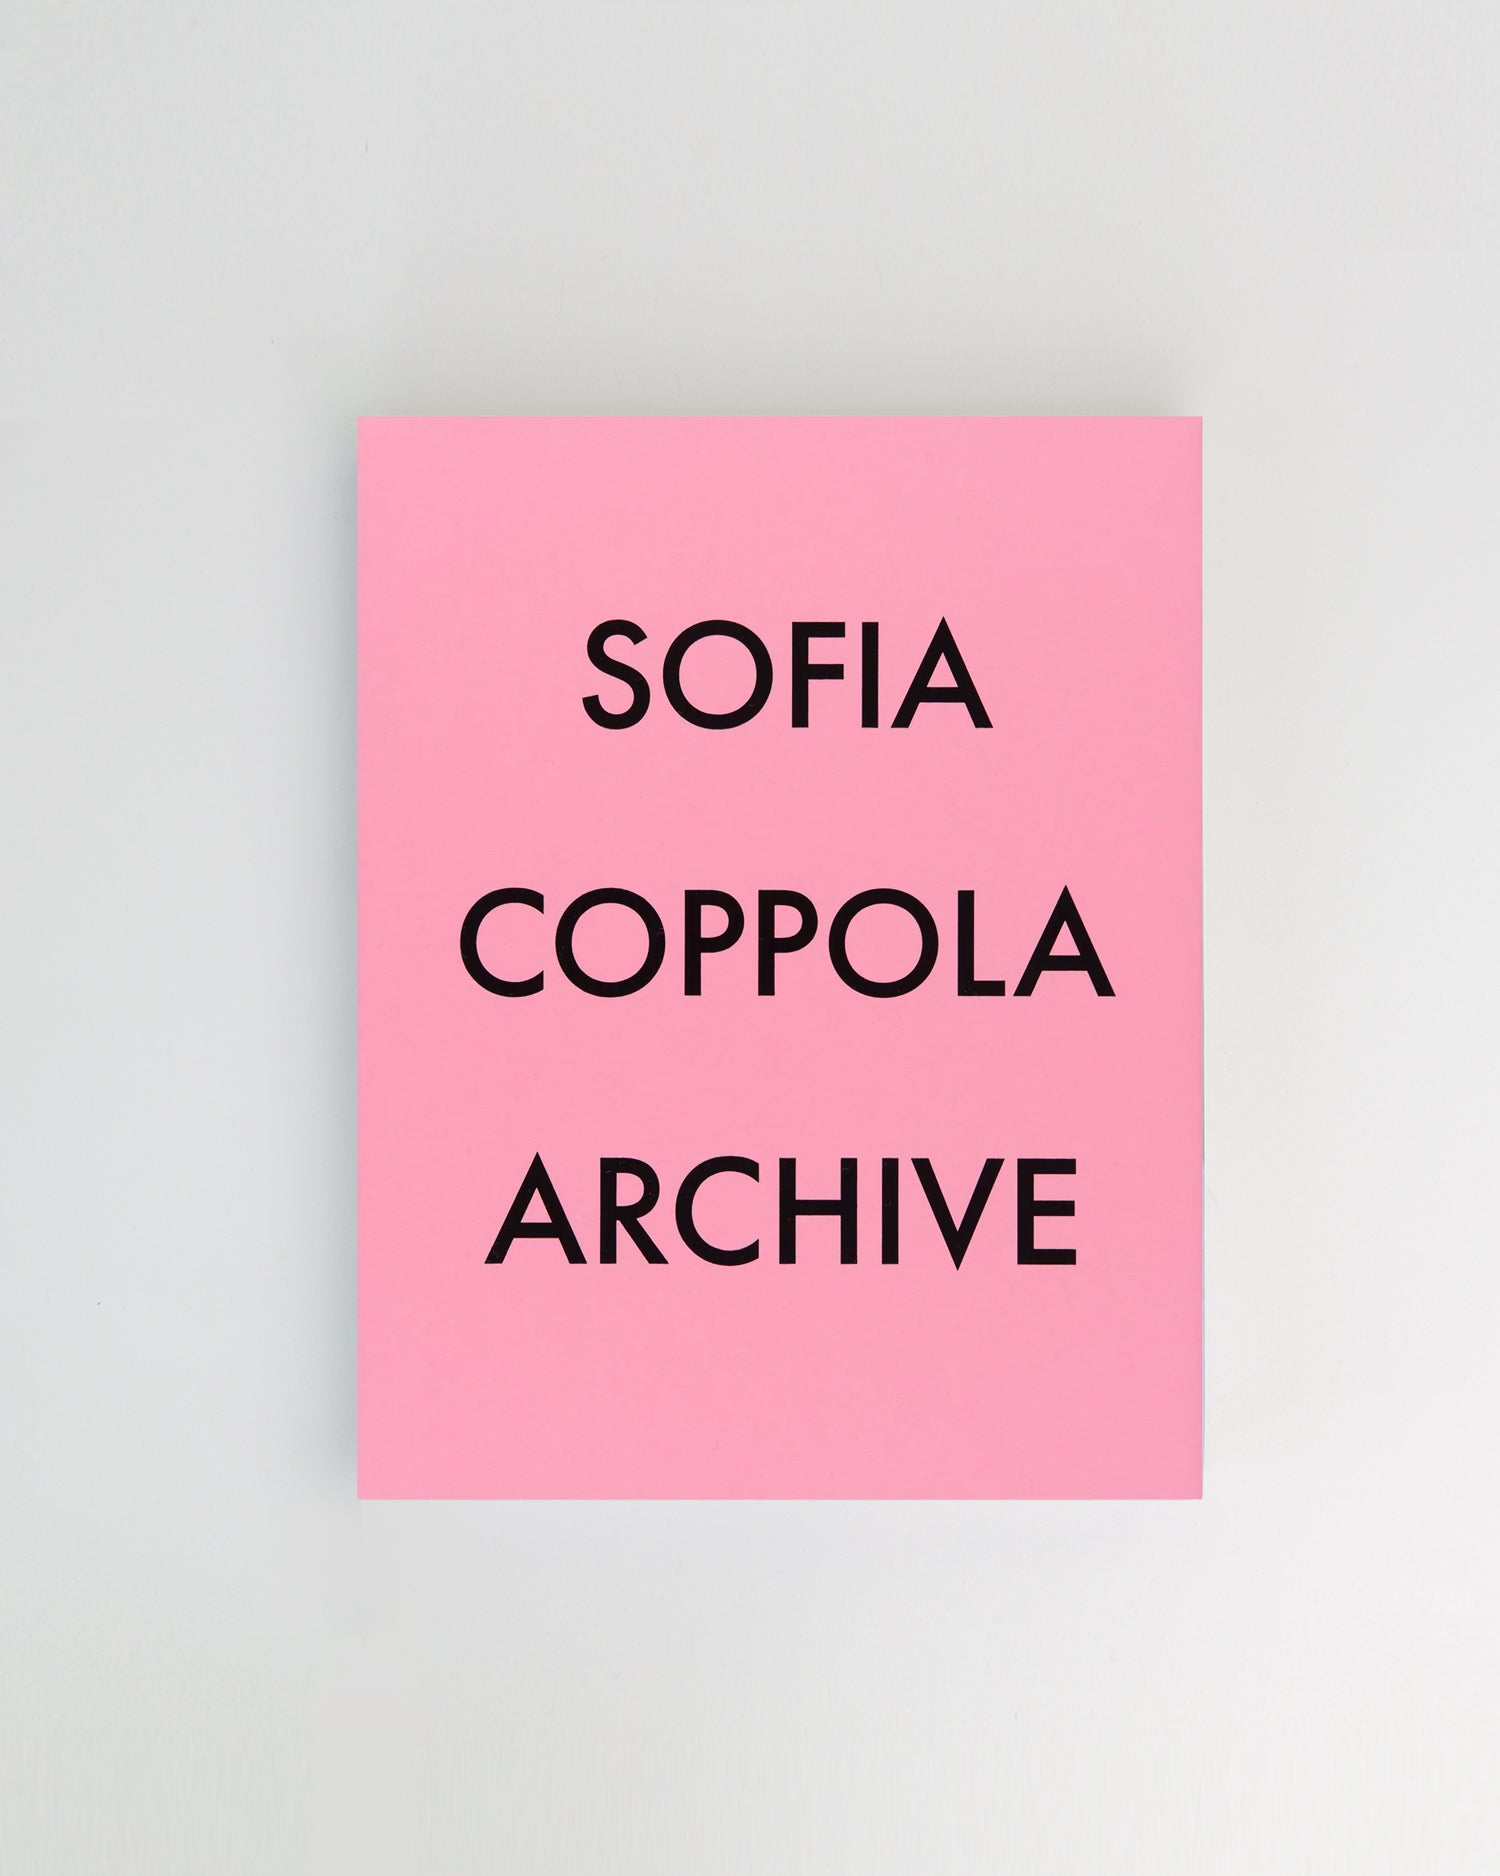 Sofia Coppola Archive